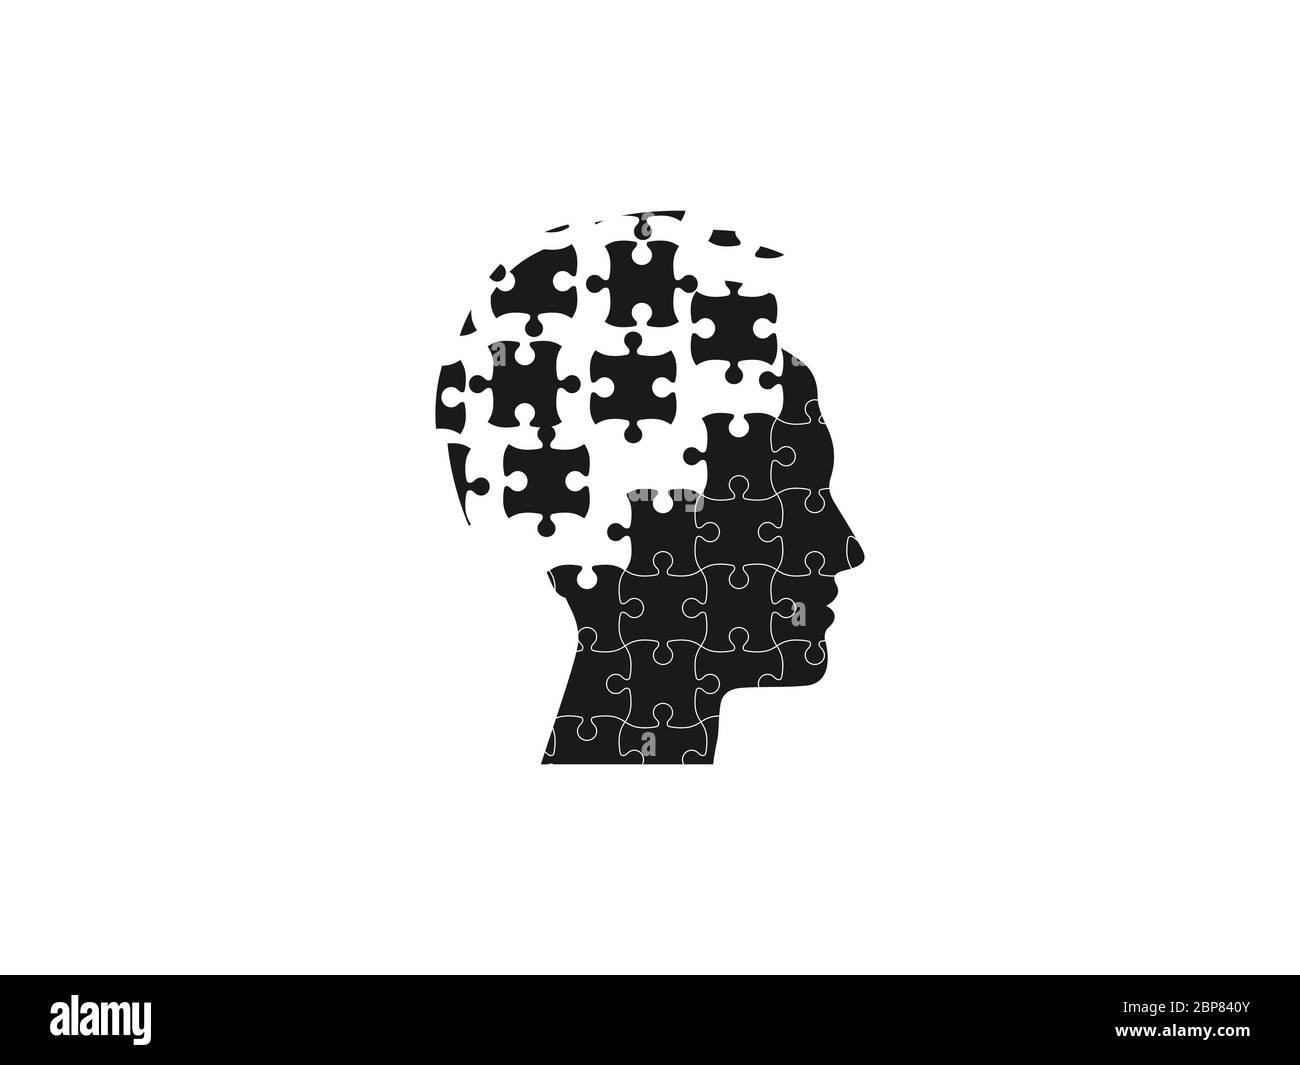 Menschlicher Kopf, Puzzle-Symbol. Vektorgrafik, flaches Design. Stock Vektor